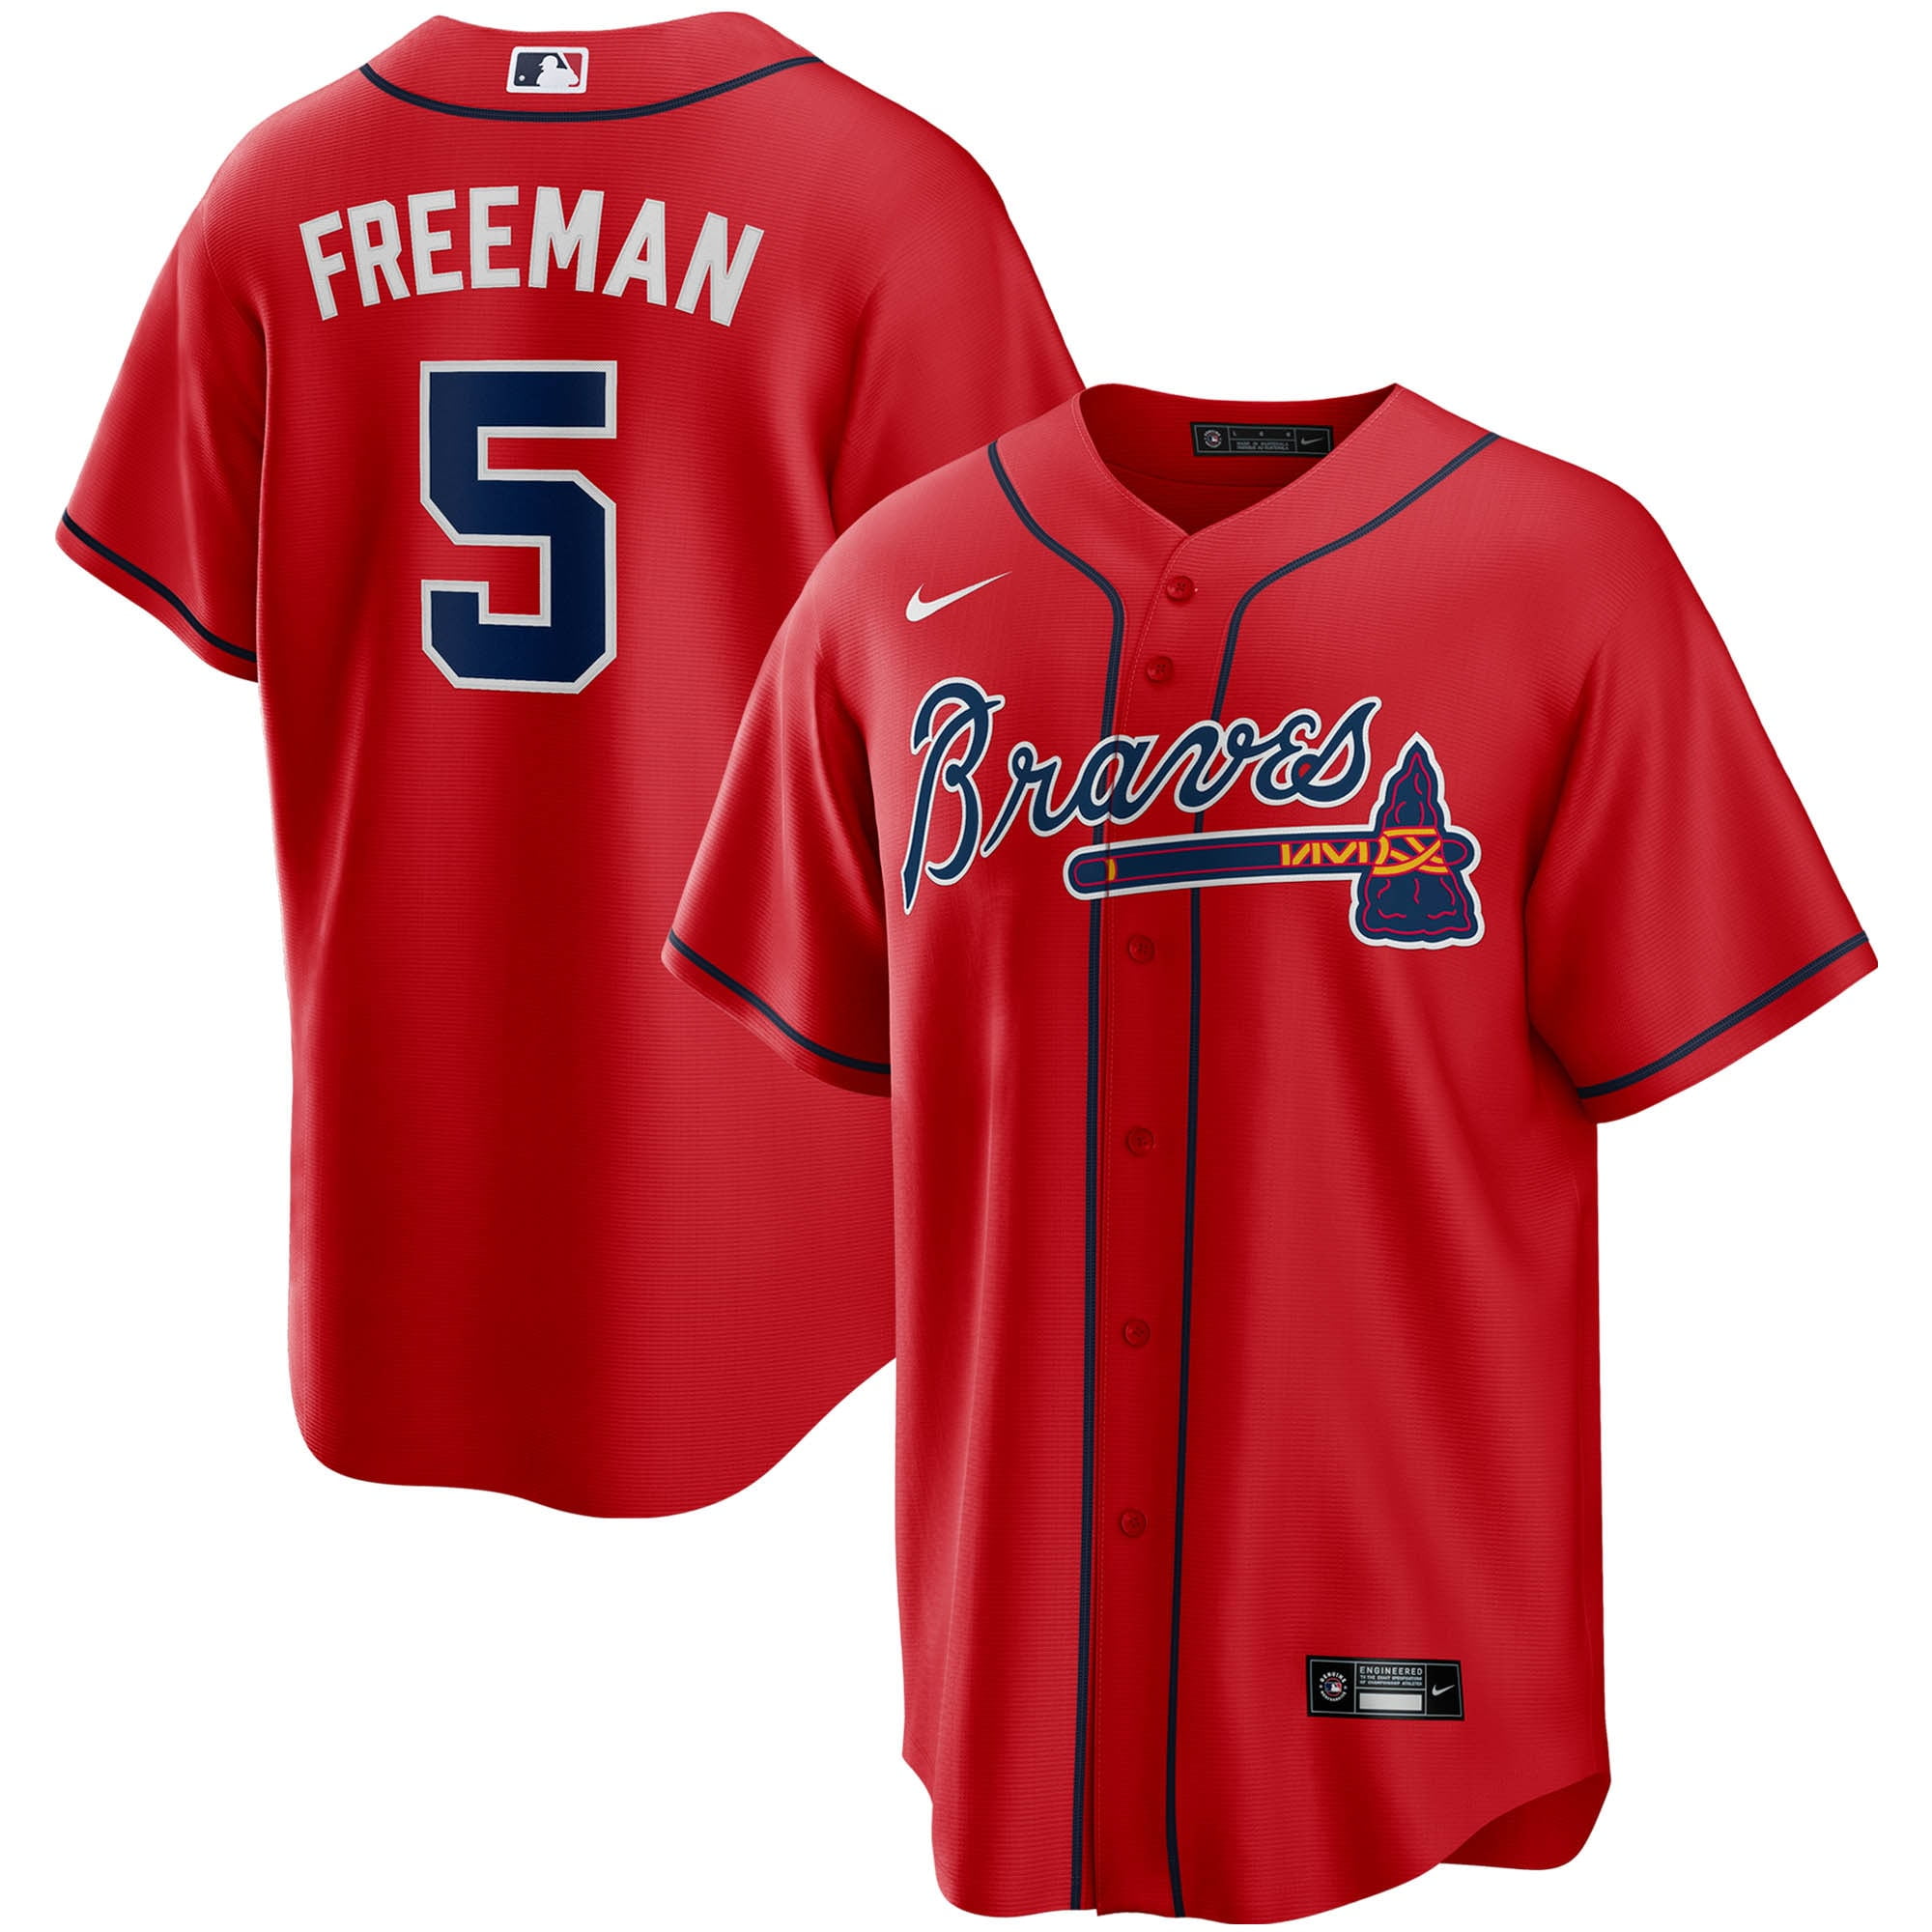 freddie freeman jersey cheap